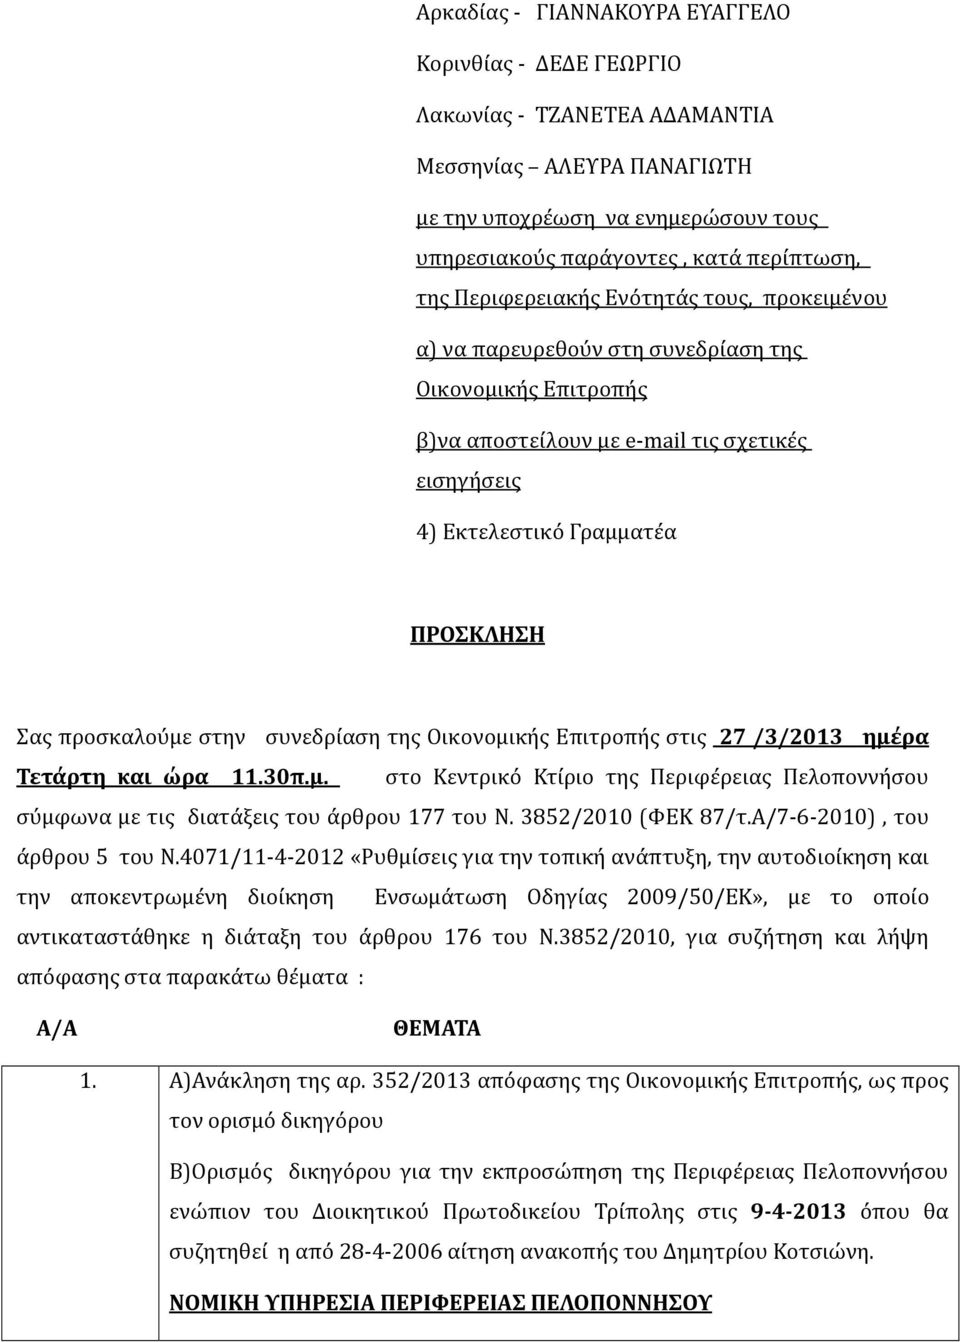 προσκαλούμε στην συνεδρίαση της Οικονομικής Επιτροπής στις 27 /3/2013 ημέρα Τετάρτη και ώρα 11.30π.μ. στο Κεντρικό Κτίριο της Περιφέρειας Πελοποννήσου σύμφωνα με τις διατάξεις του άρθρου 177 του Ν.